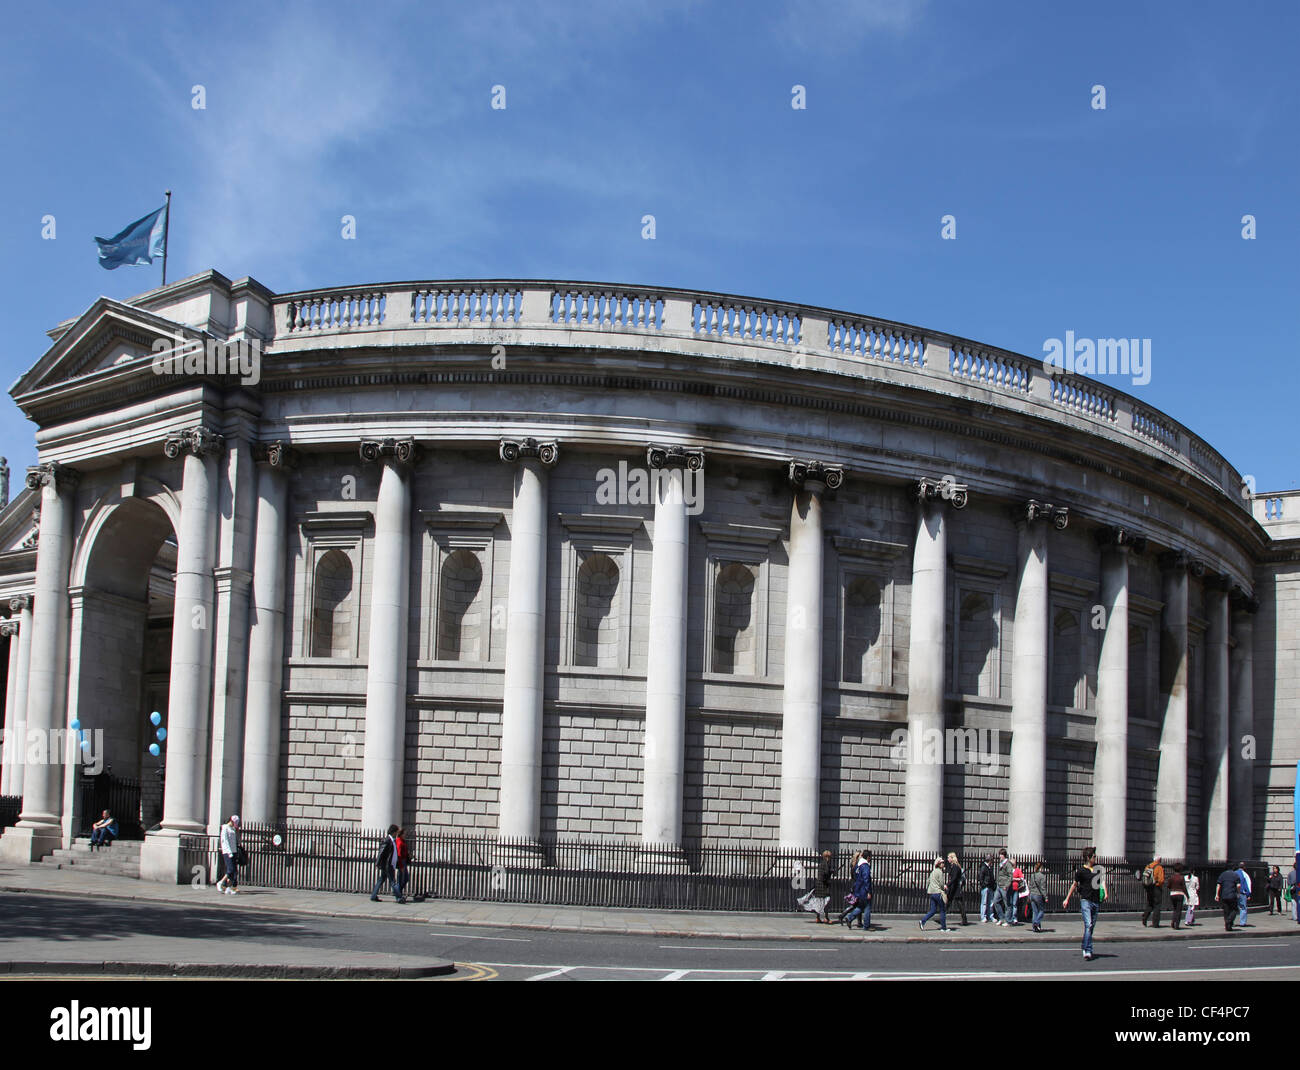 Die Bank of Ireland in Dublin. Das Gebäude wurde von Sir Edward Lovett Pearce im Jahre 1729 entworfen, um das irische Parlament aber w Haus Stockfoto